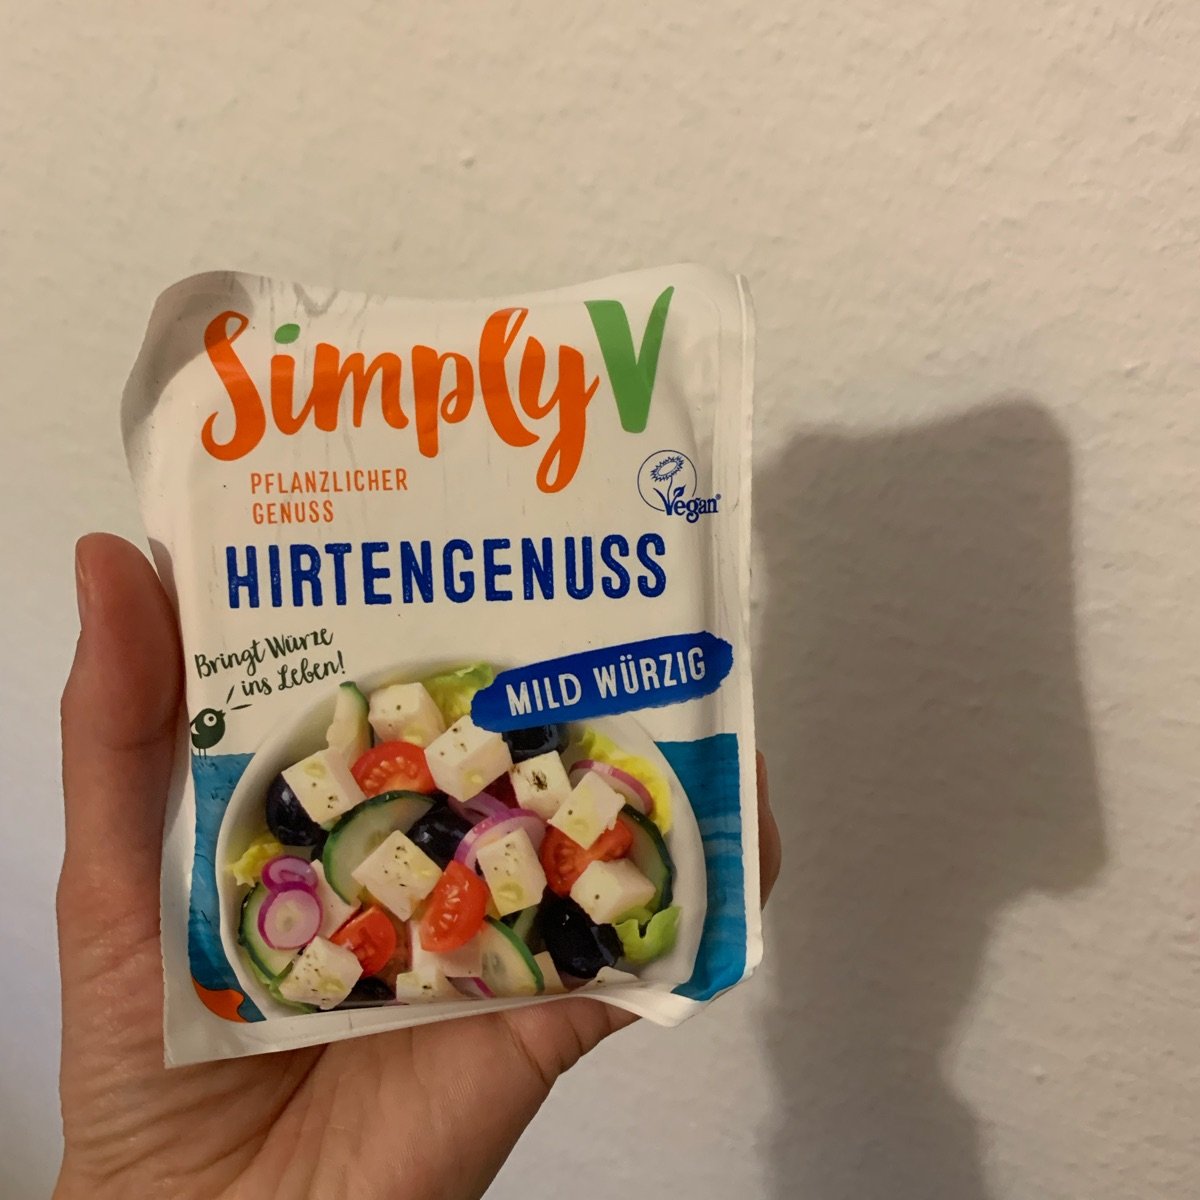 Simply V Hirtengenuss Review